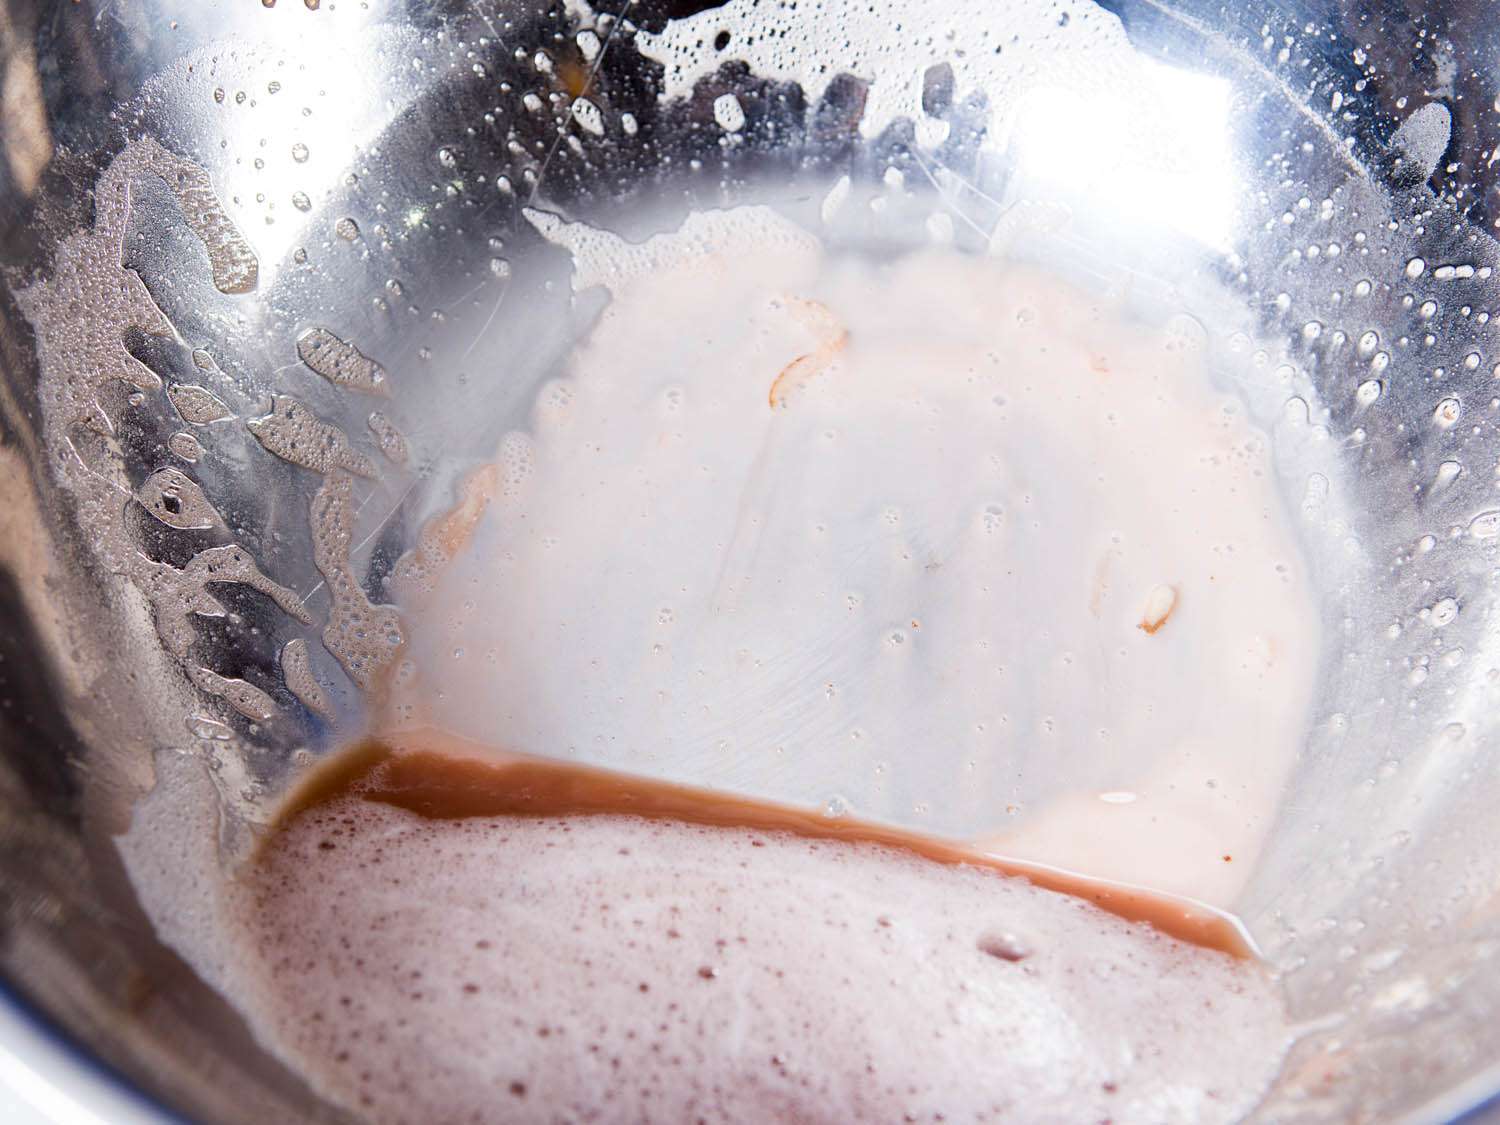 棕色的水和含水的土豆淀粉在一个金属搅拌碗的底部gydF4y2Ba